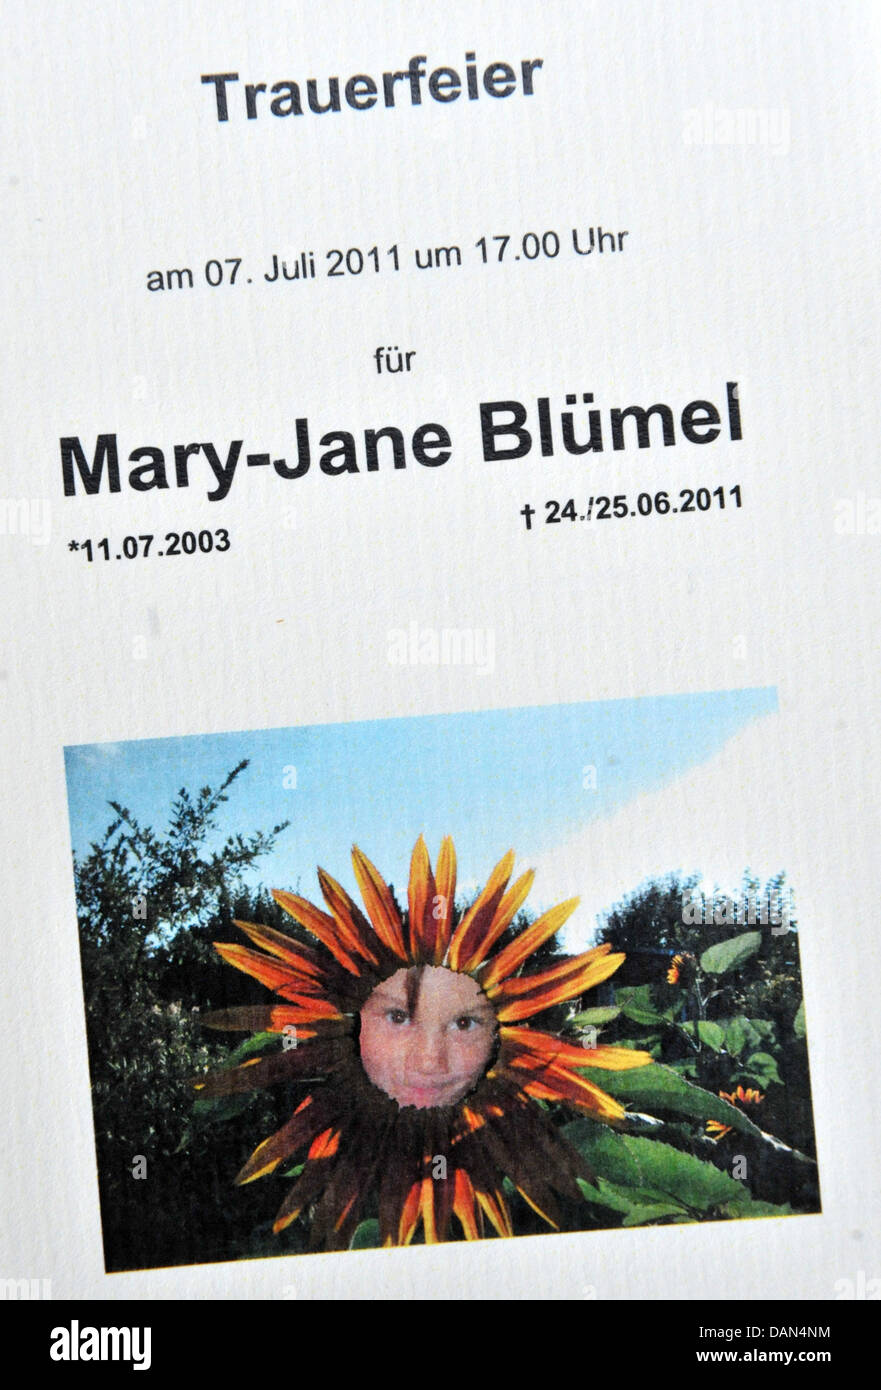 Un programme illustré avec Mary-Jane's photo est mis en place au service funèbre pour les morts girl à Radolfzell, Allemagne, 07 juillet 2011. Le 24 juin 2011, l'enfant de sept ans n'a pas renvoyé de l'école. Les randonneurs a trouvé son corps à un ruisseau dans la forêt. Pour des raisons d'enquête, la police n'a pas encore révélé la cause du décès. Photo : Martin Schutt Banque D'Images